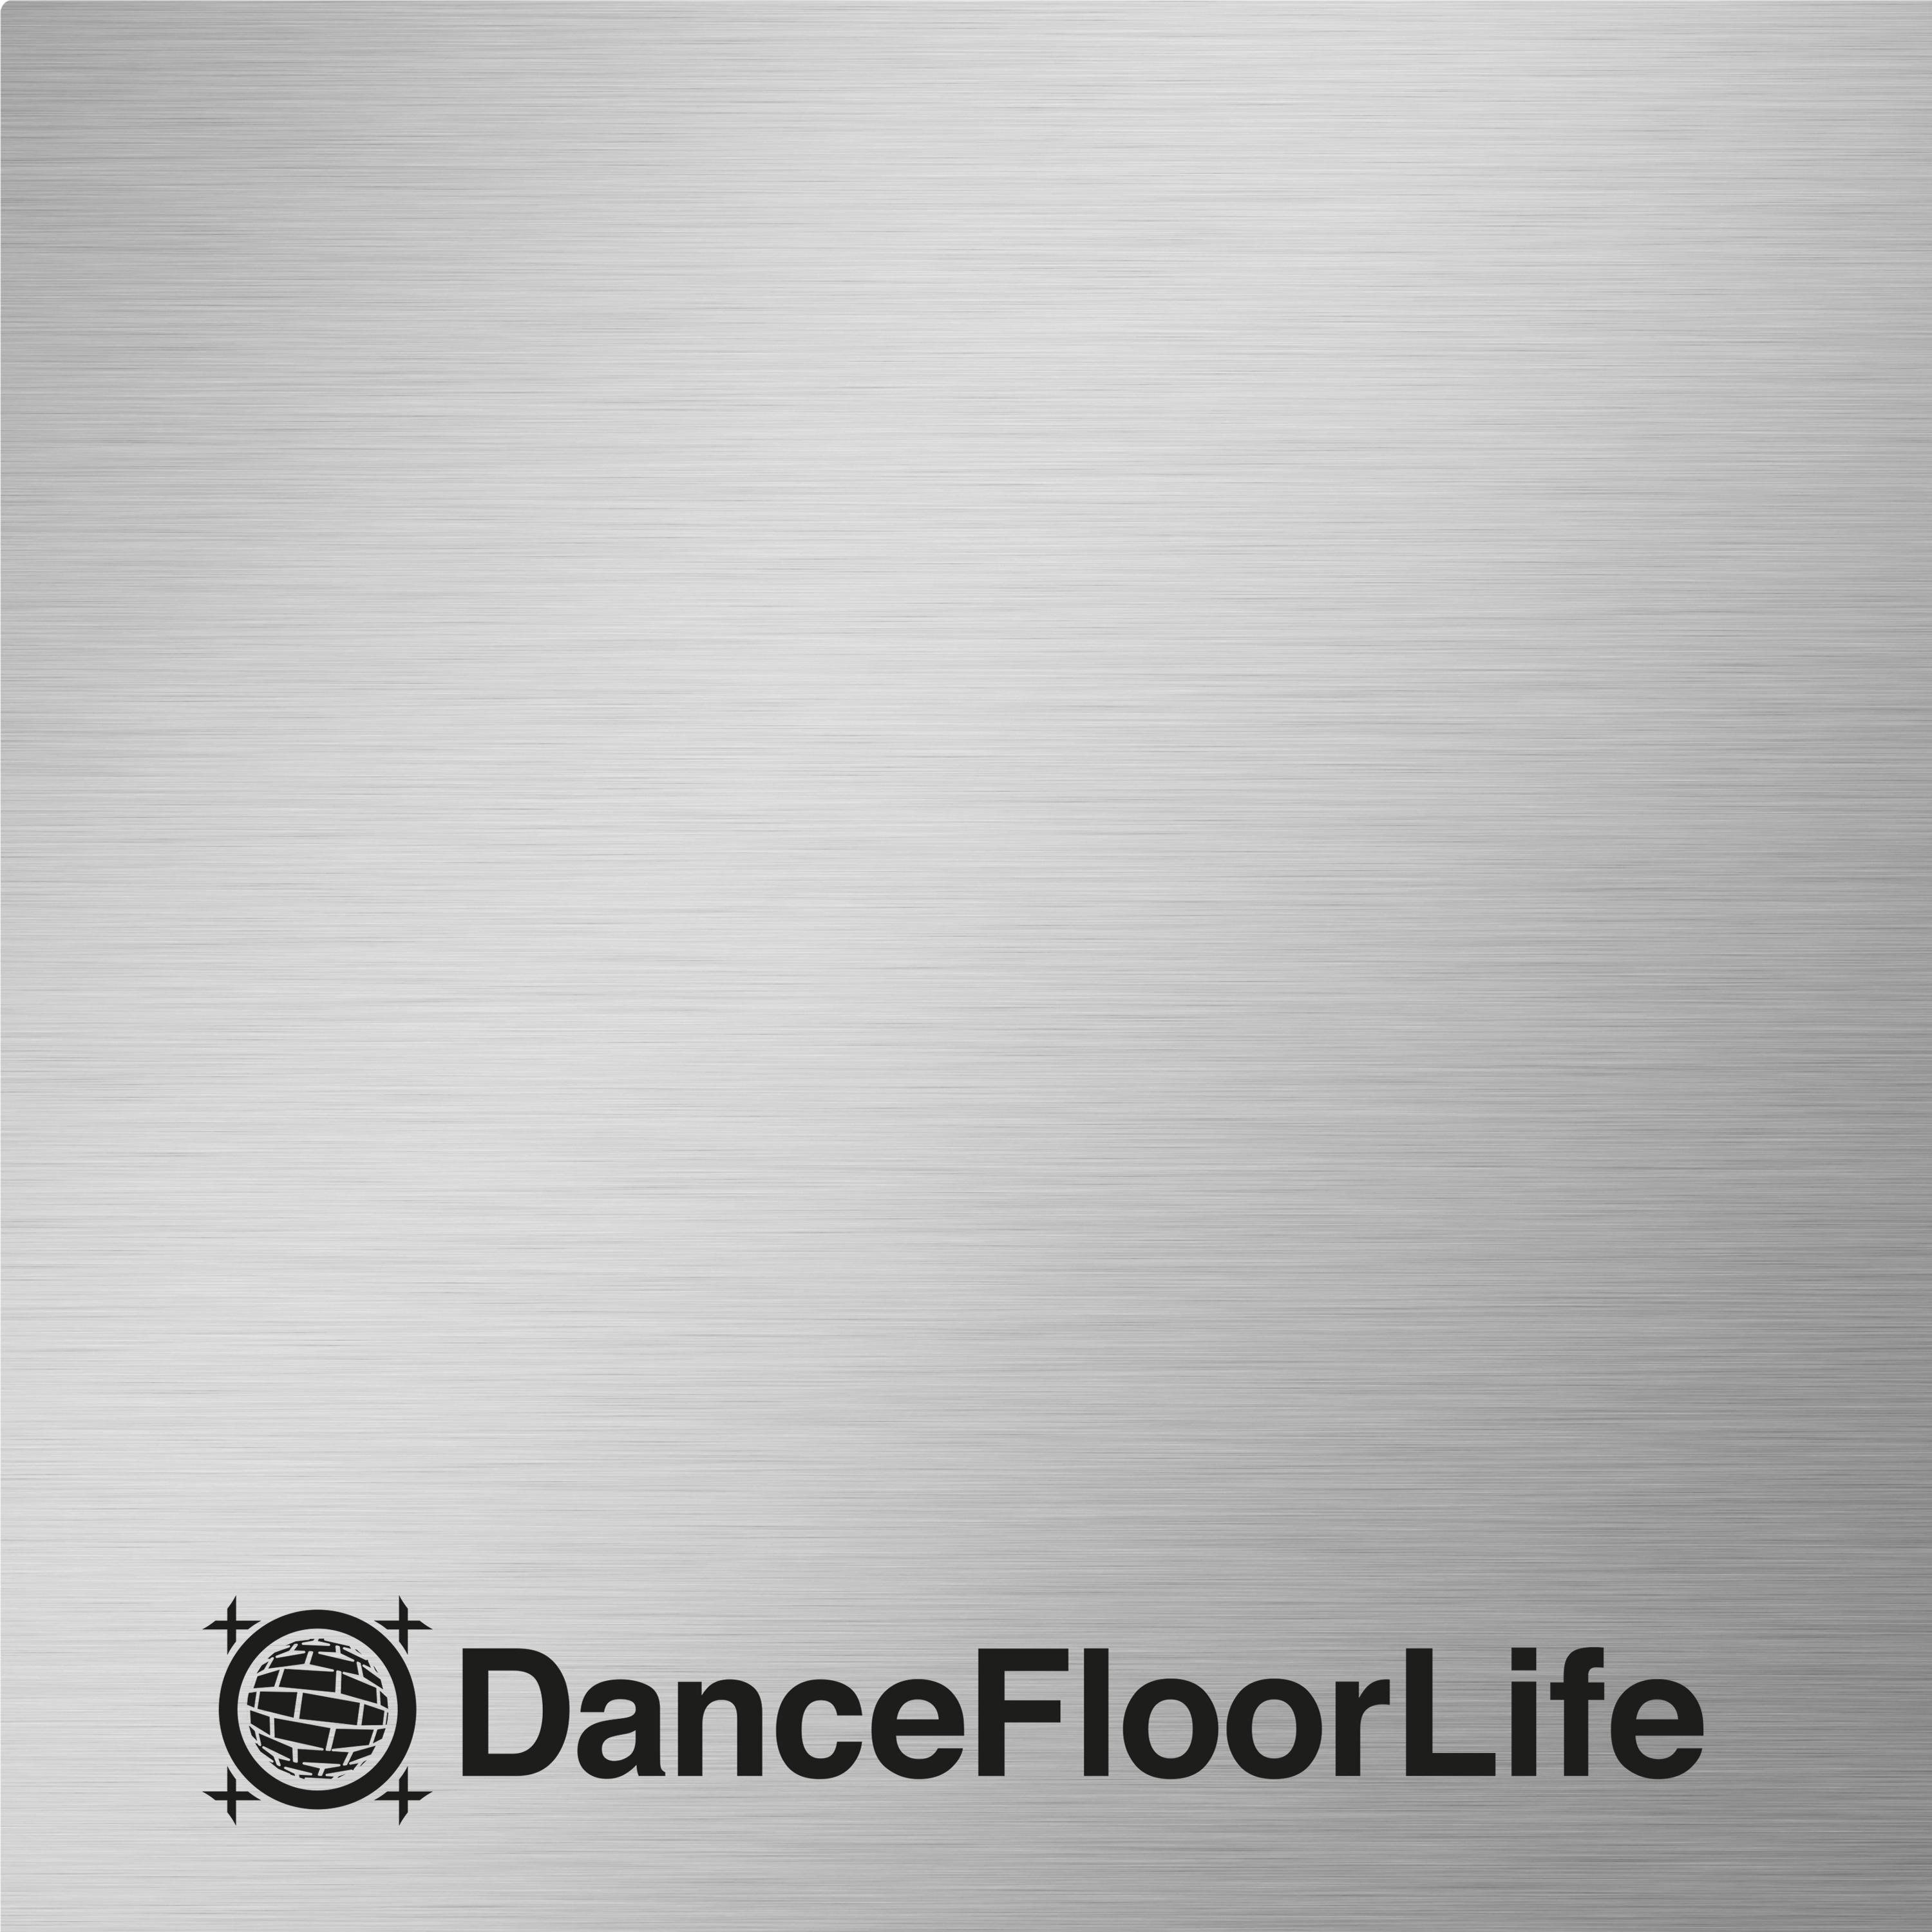 DanceFloorLife